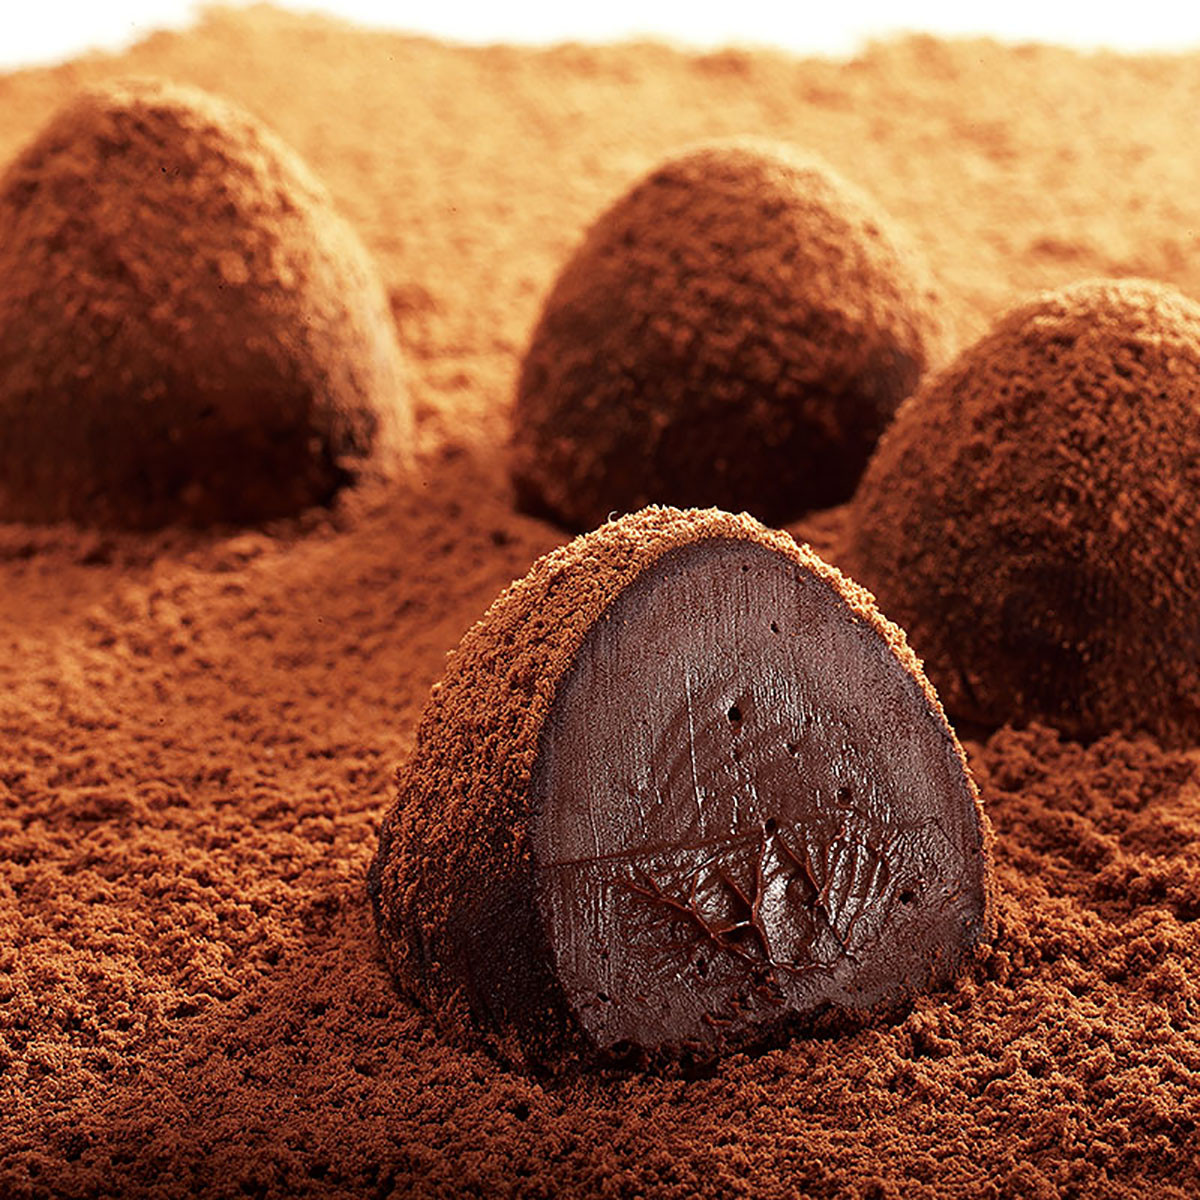 麦德好松露巧克力88g 松露黑巧克力 巧克力礼盒 巧克力丝滑 巧克力 巧